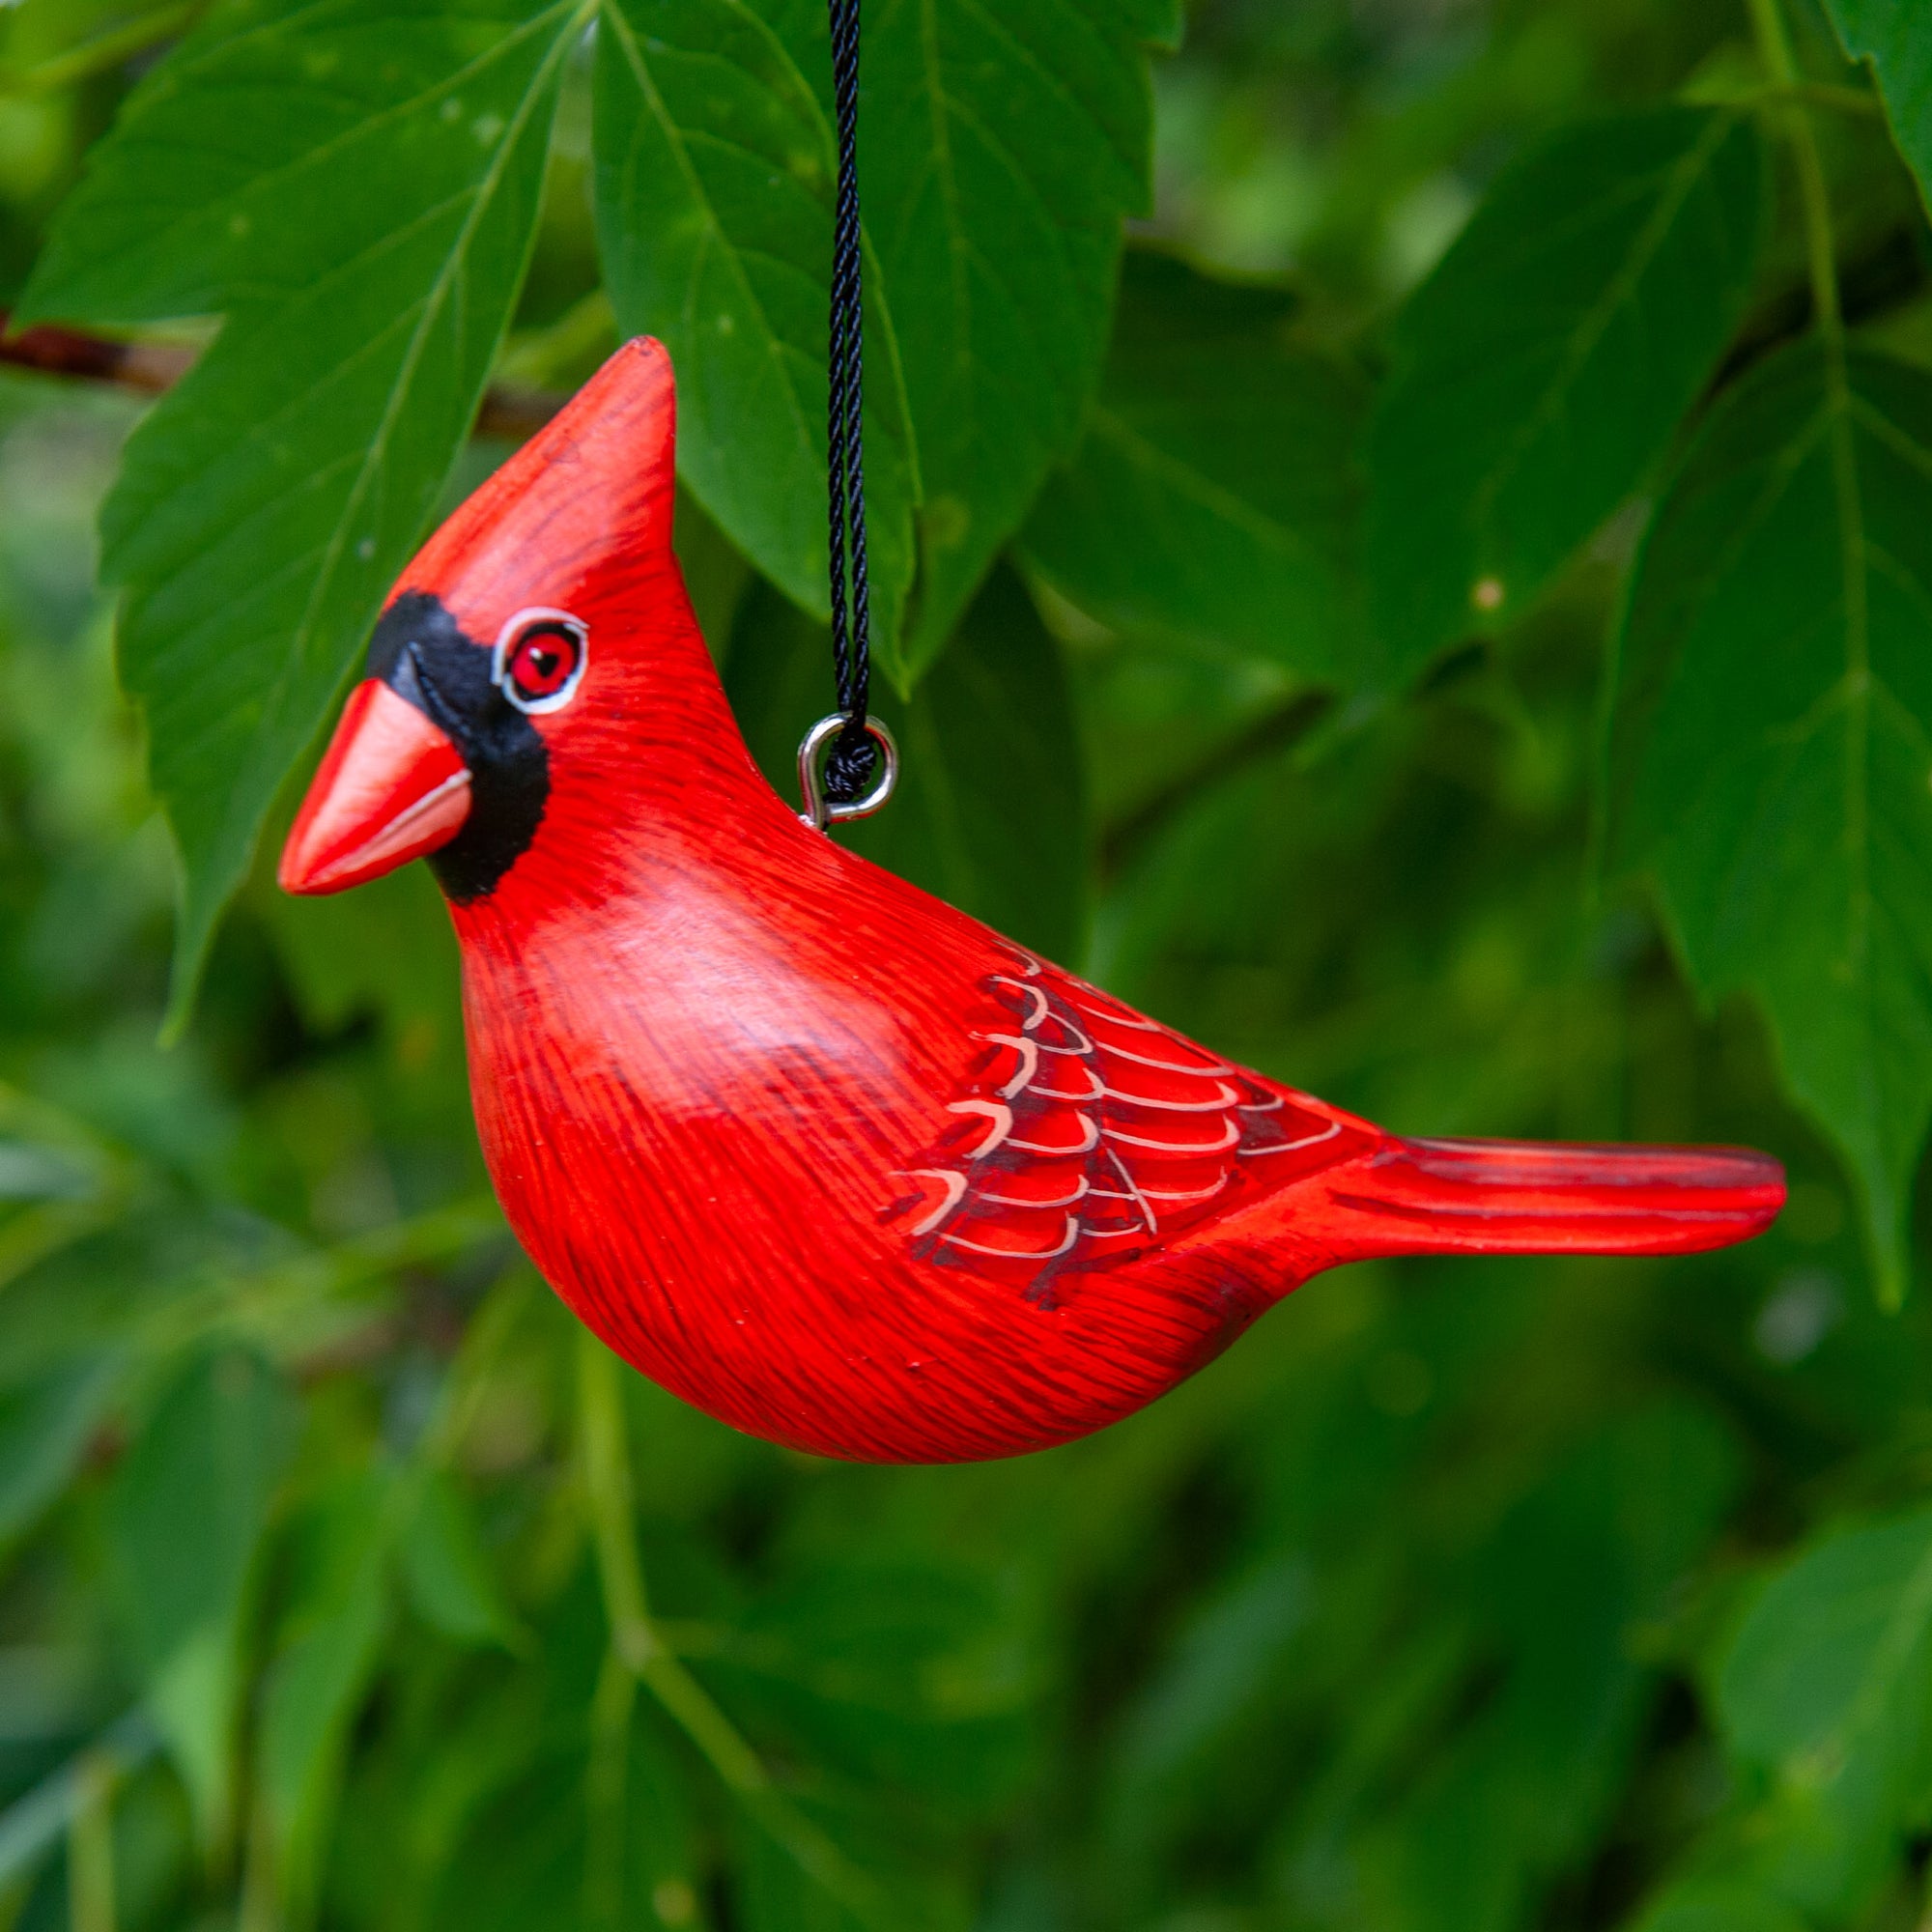 Wooden Cardinal Ornament